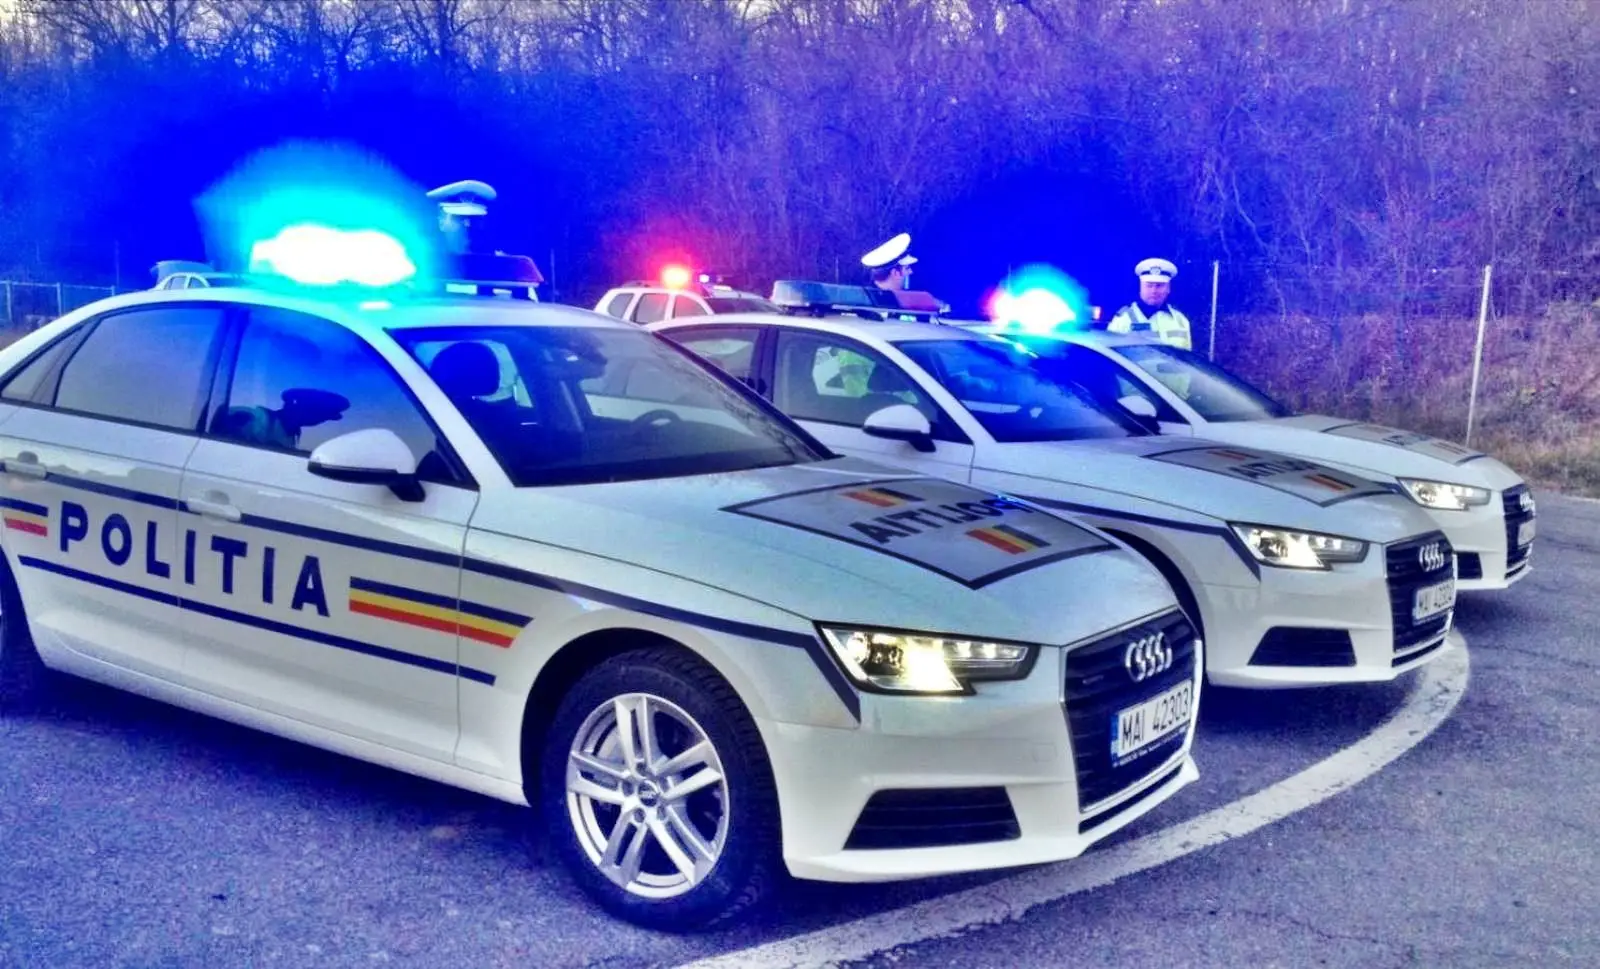 Die rumänische Polizei bittet Rumänen, beim Überqueren der Straße vorsichtig zu sein